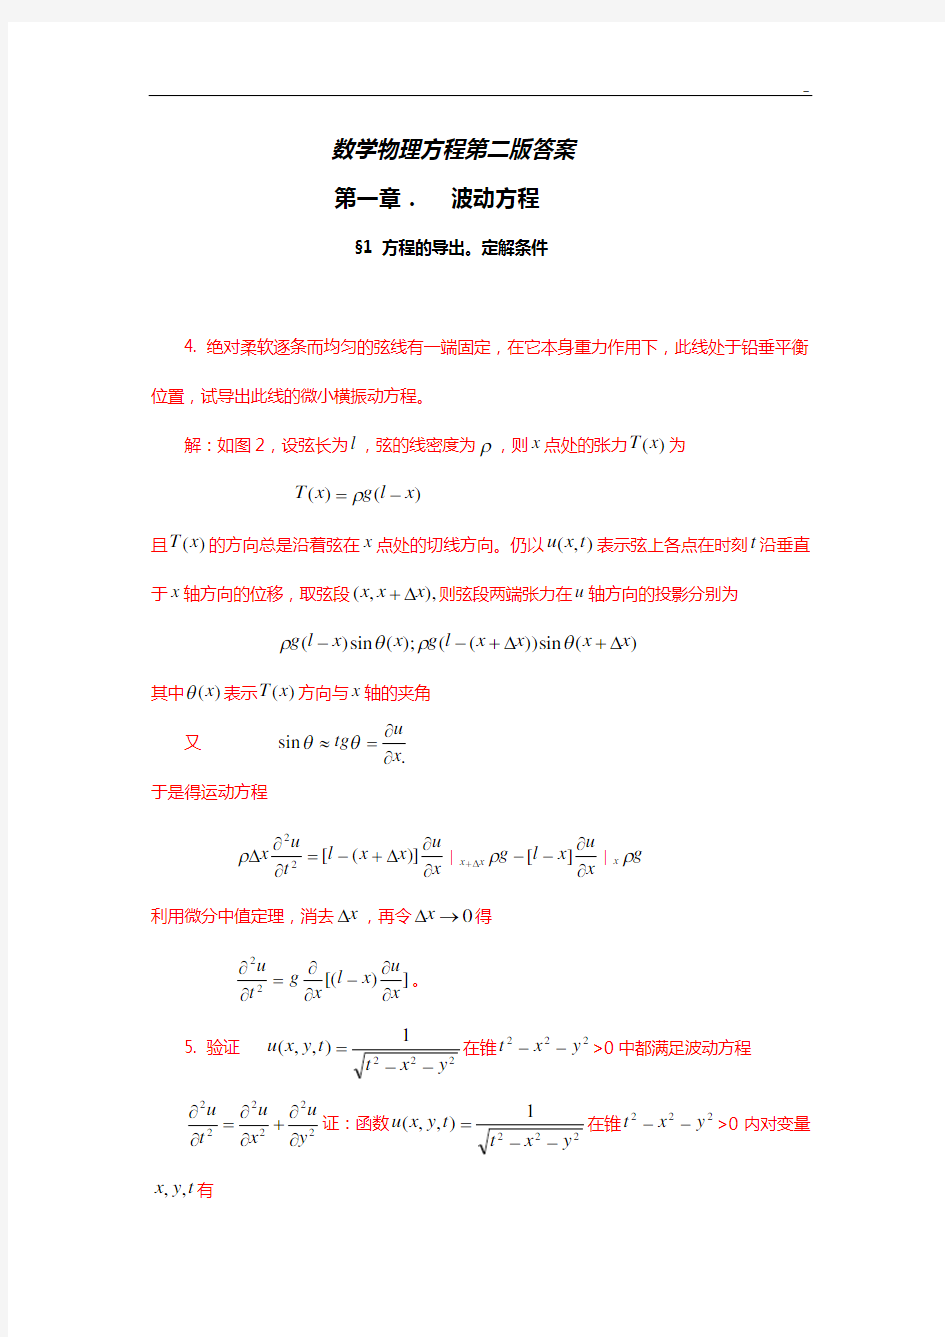 数学物理方程第二版答案解析(平时课后知识题作业任务)